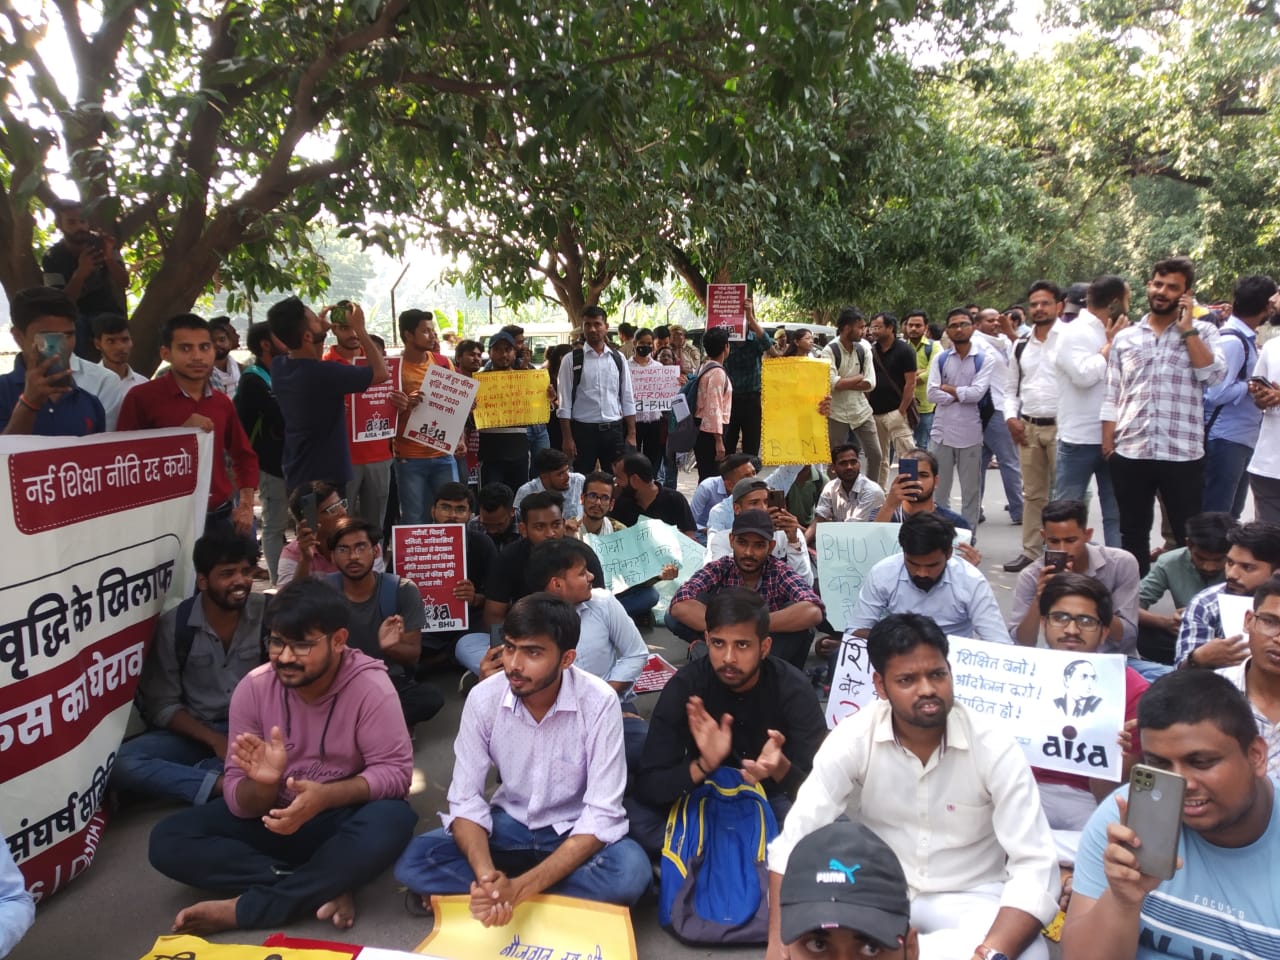 बीएचयू में फ़ीस वृद्धि के विरोध में आंदोलन, सैकड़ों छात्र-छात्राओं ने सेंट्रल ऑफ़िस का किया घेराव